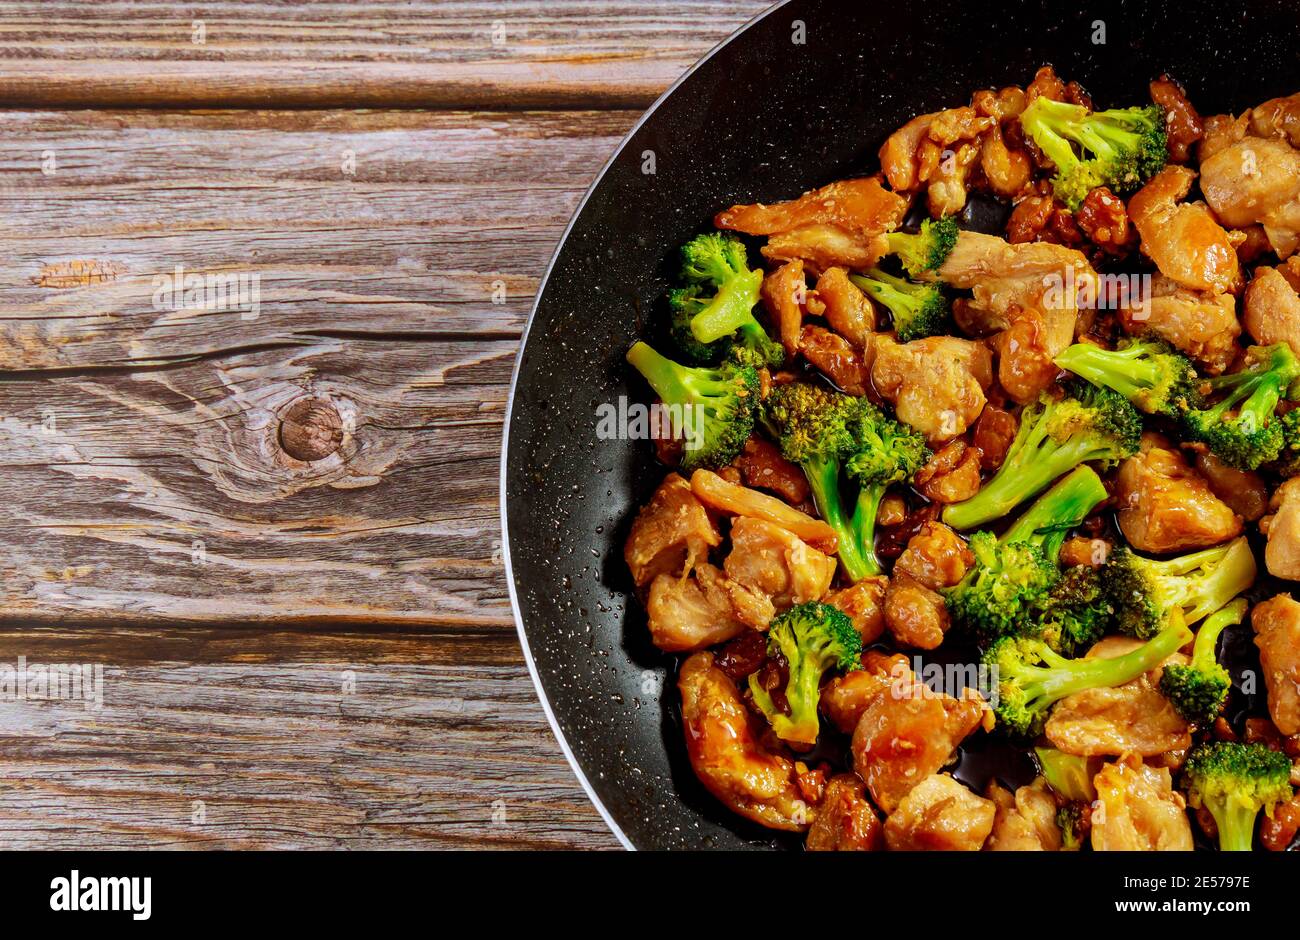 Chinesische köstliche Gericht rühren-braten Huhn mit Brokkoli im Wok  Stockfotografie - Alamy